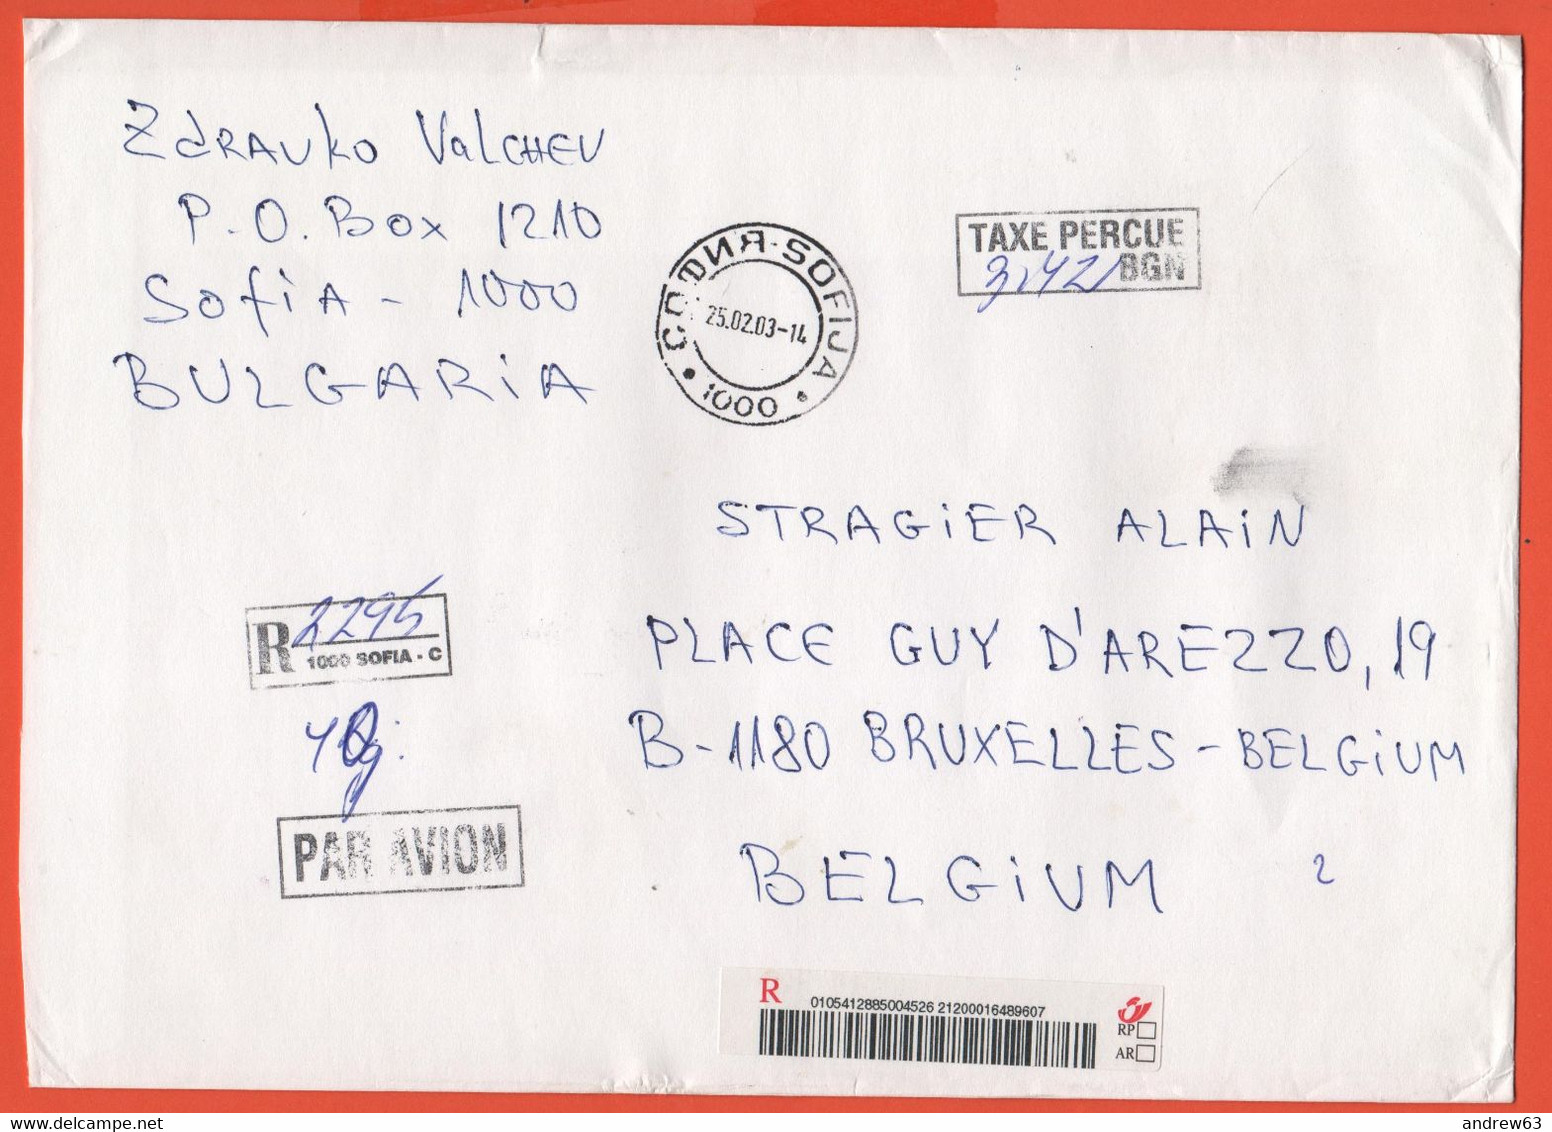 BULGARIA - BULGARIE - 2003 - 3,42 Postage Paid Taxe Percue - Registered - Par Avion - Medium Envelope - Viaggiata Da Sof - Briefe U. Dokumente